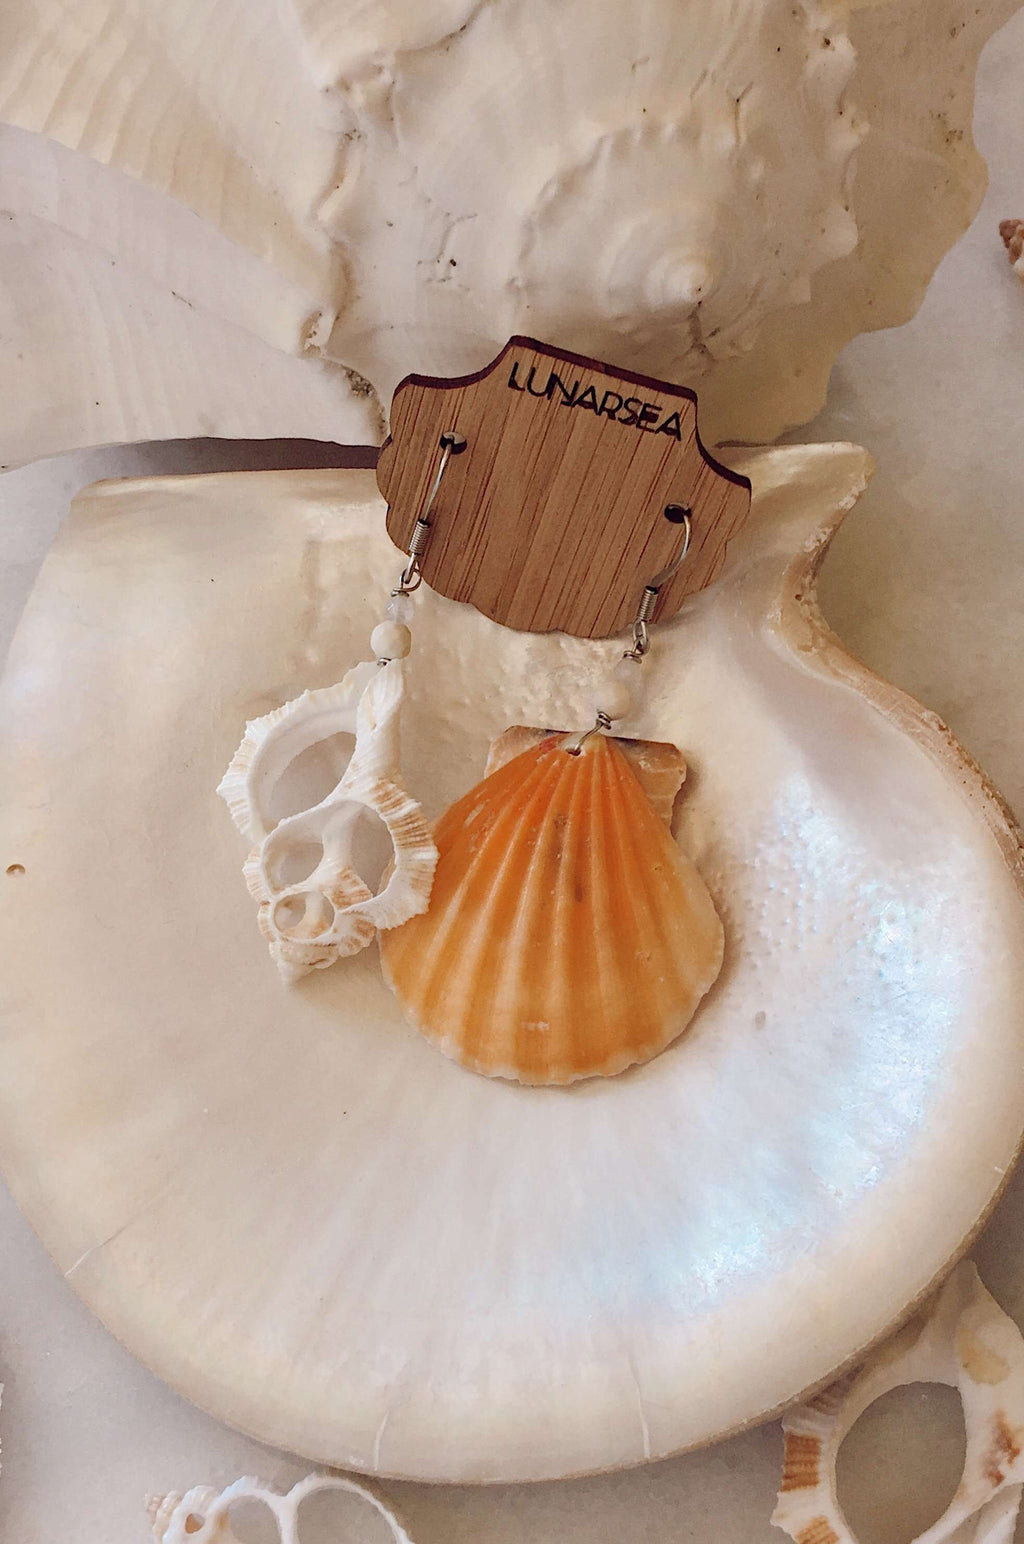 Castaway Shell Earrings, Earrings with Orange Scallop + White Slice by Lunarsea Designs